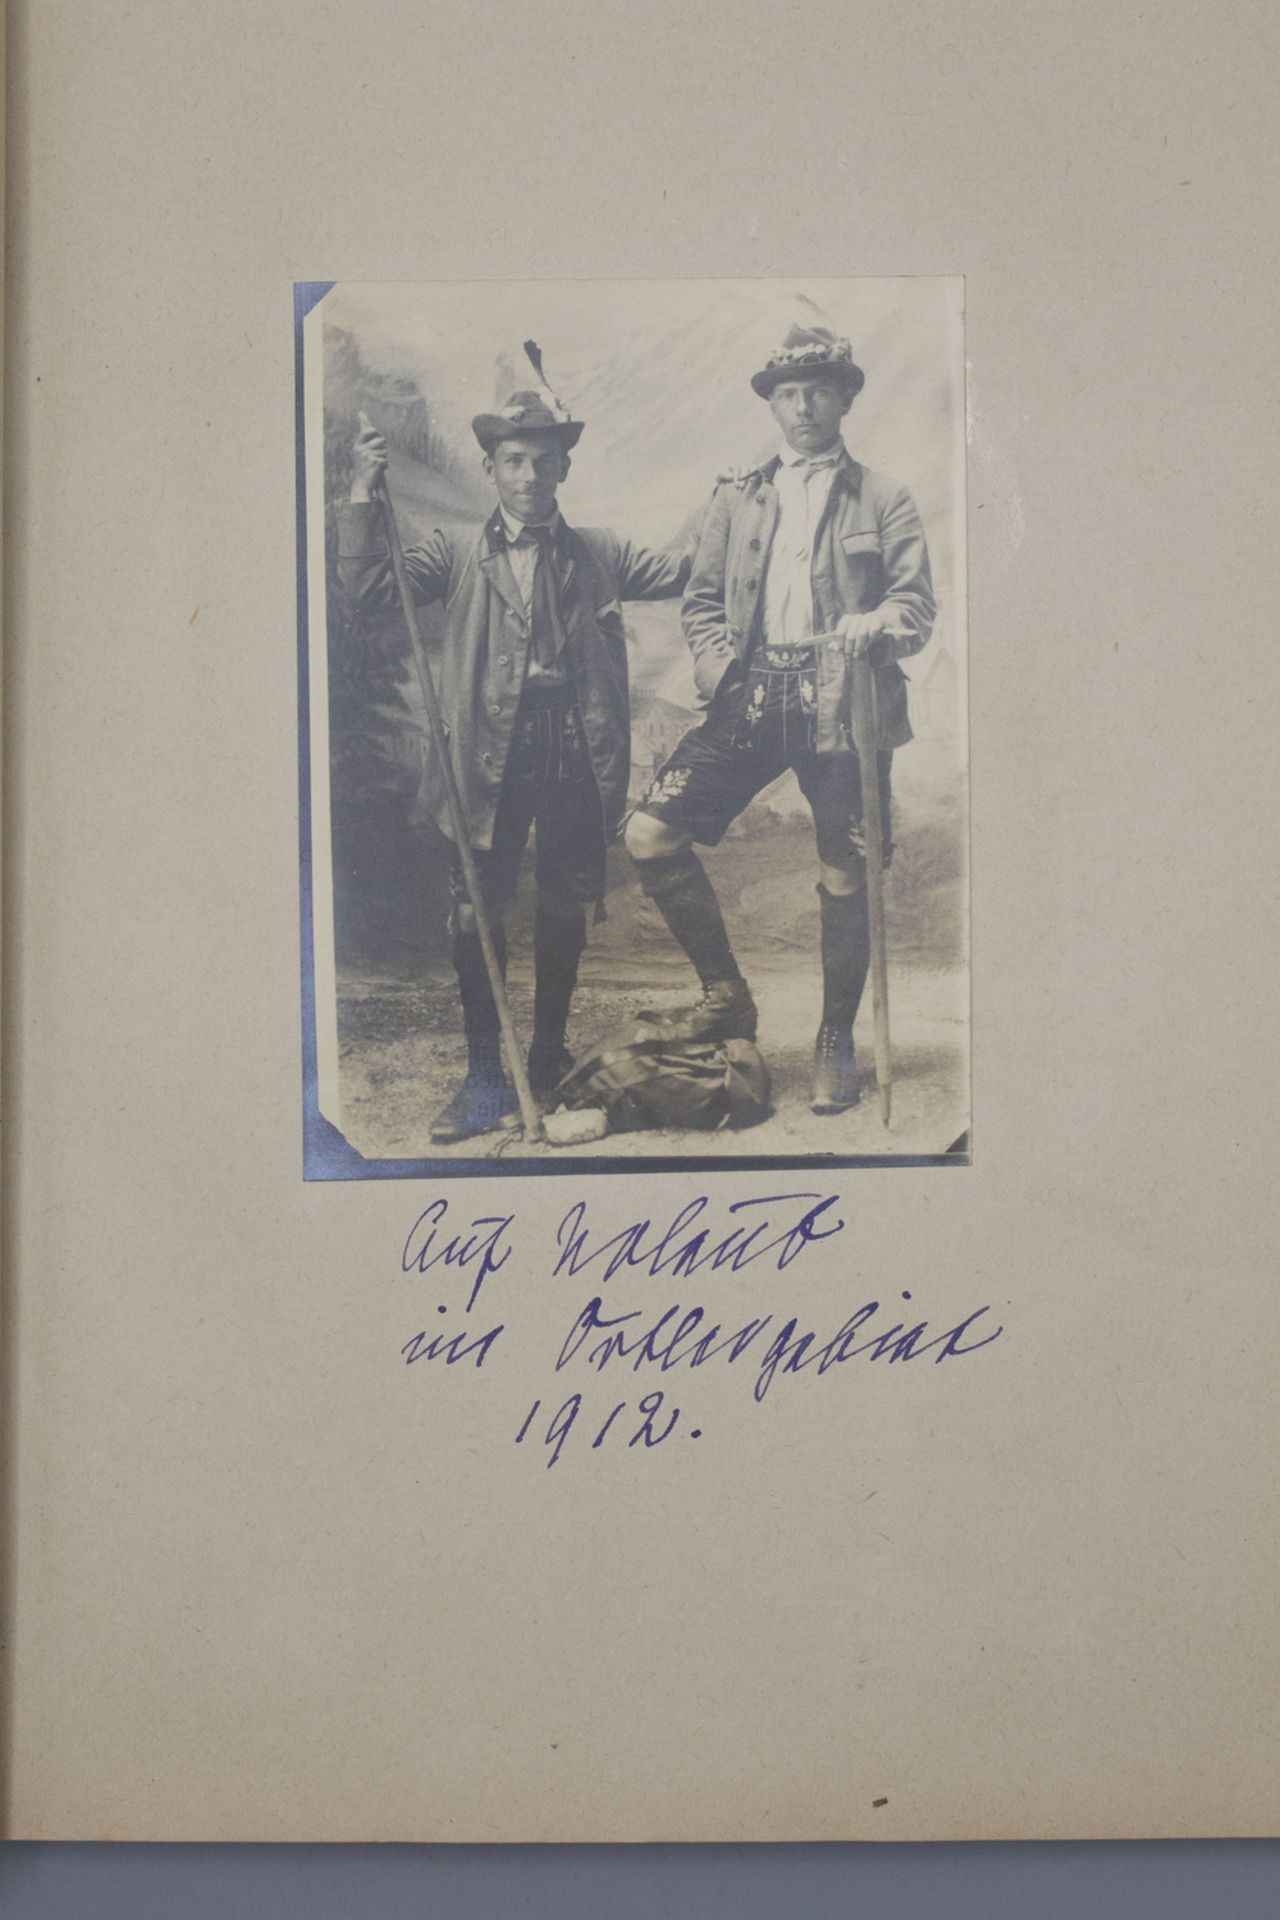 Biographie / A biography des Joachim Diederich Kramsta, 1. Wachoffizier auf U66, 1917/18 - Image 5 of 7